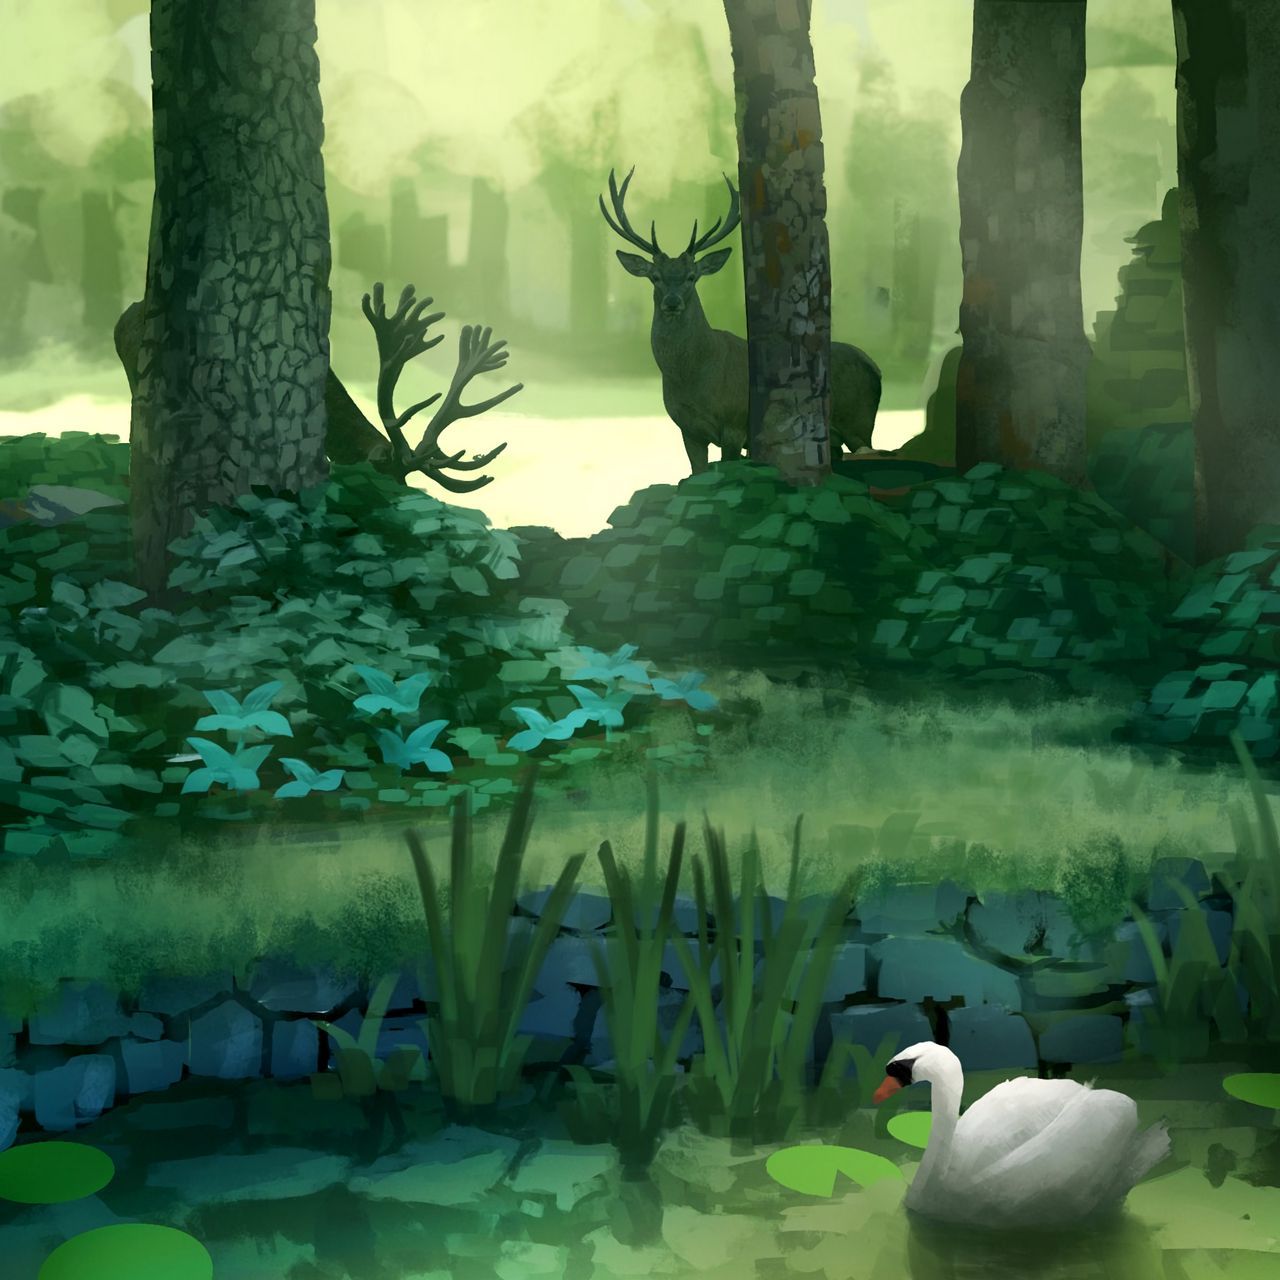 Download wallpaper 1280x1280 forest, art, deer, swan, pond, trees ipad, ipad ipad mini for parallax HD background